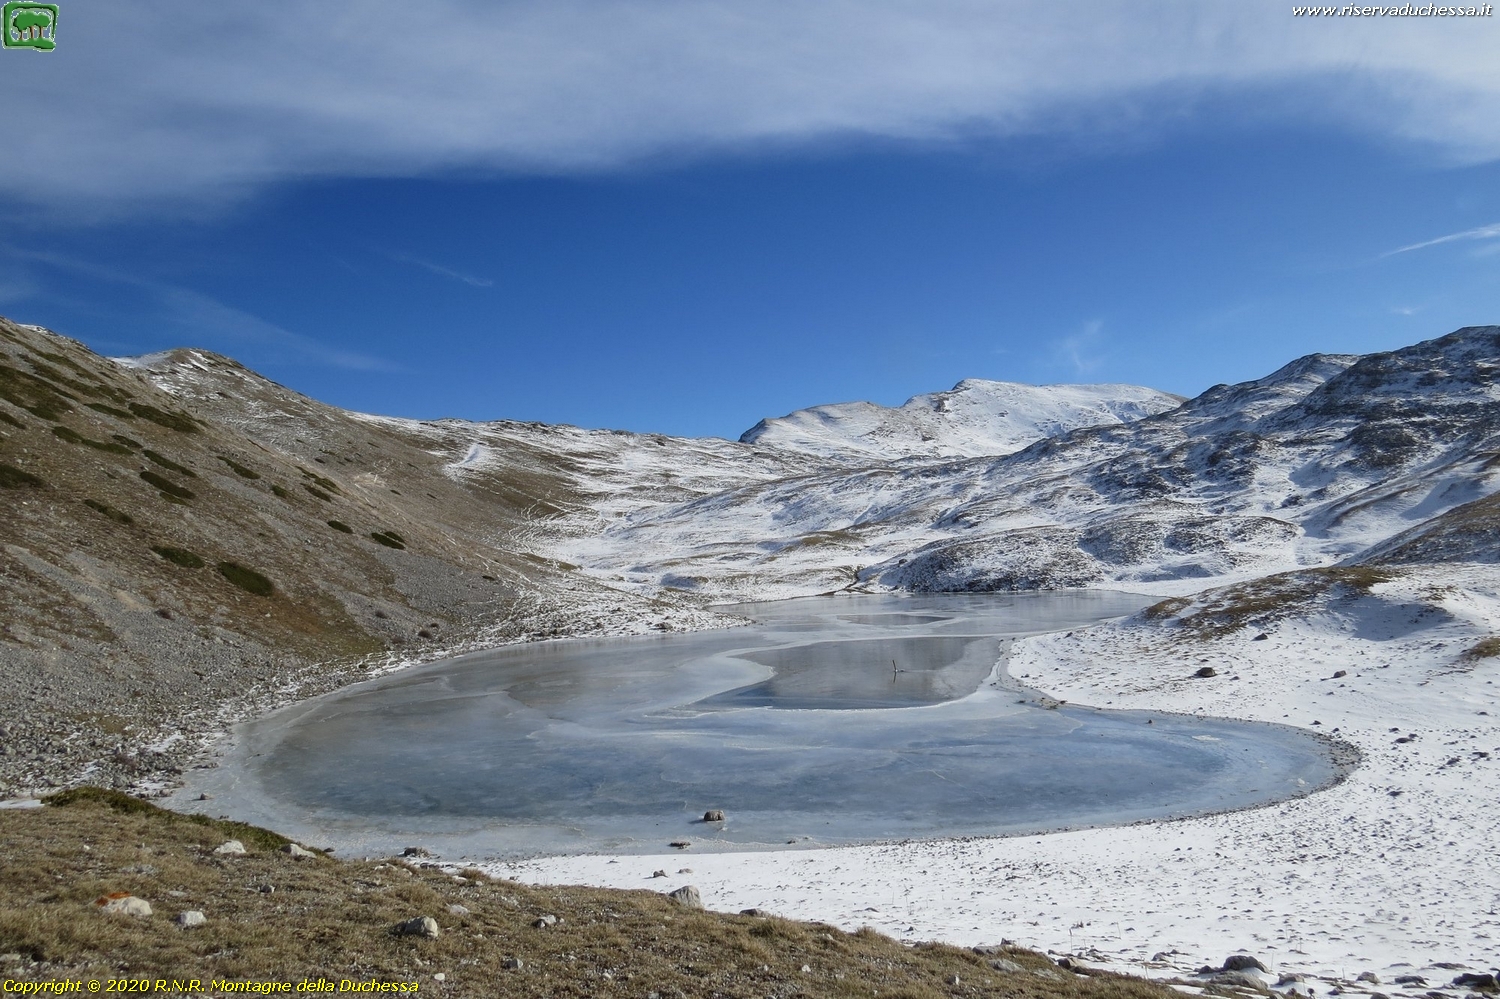 Il lago ghiacciato con poca neve ad imbiancare le praterie circostanti